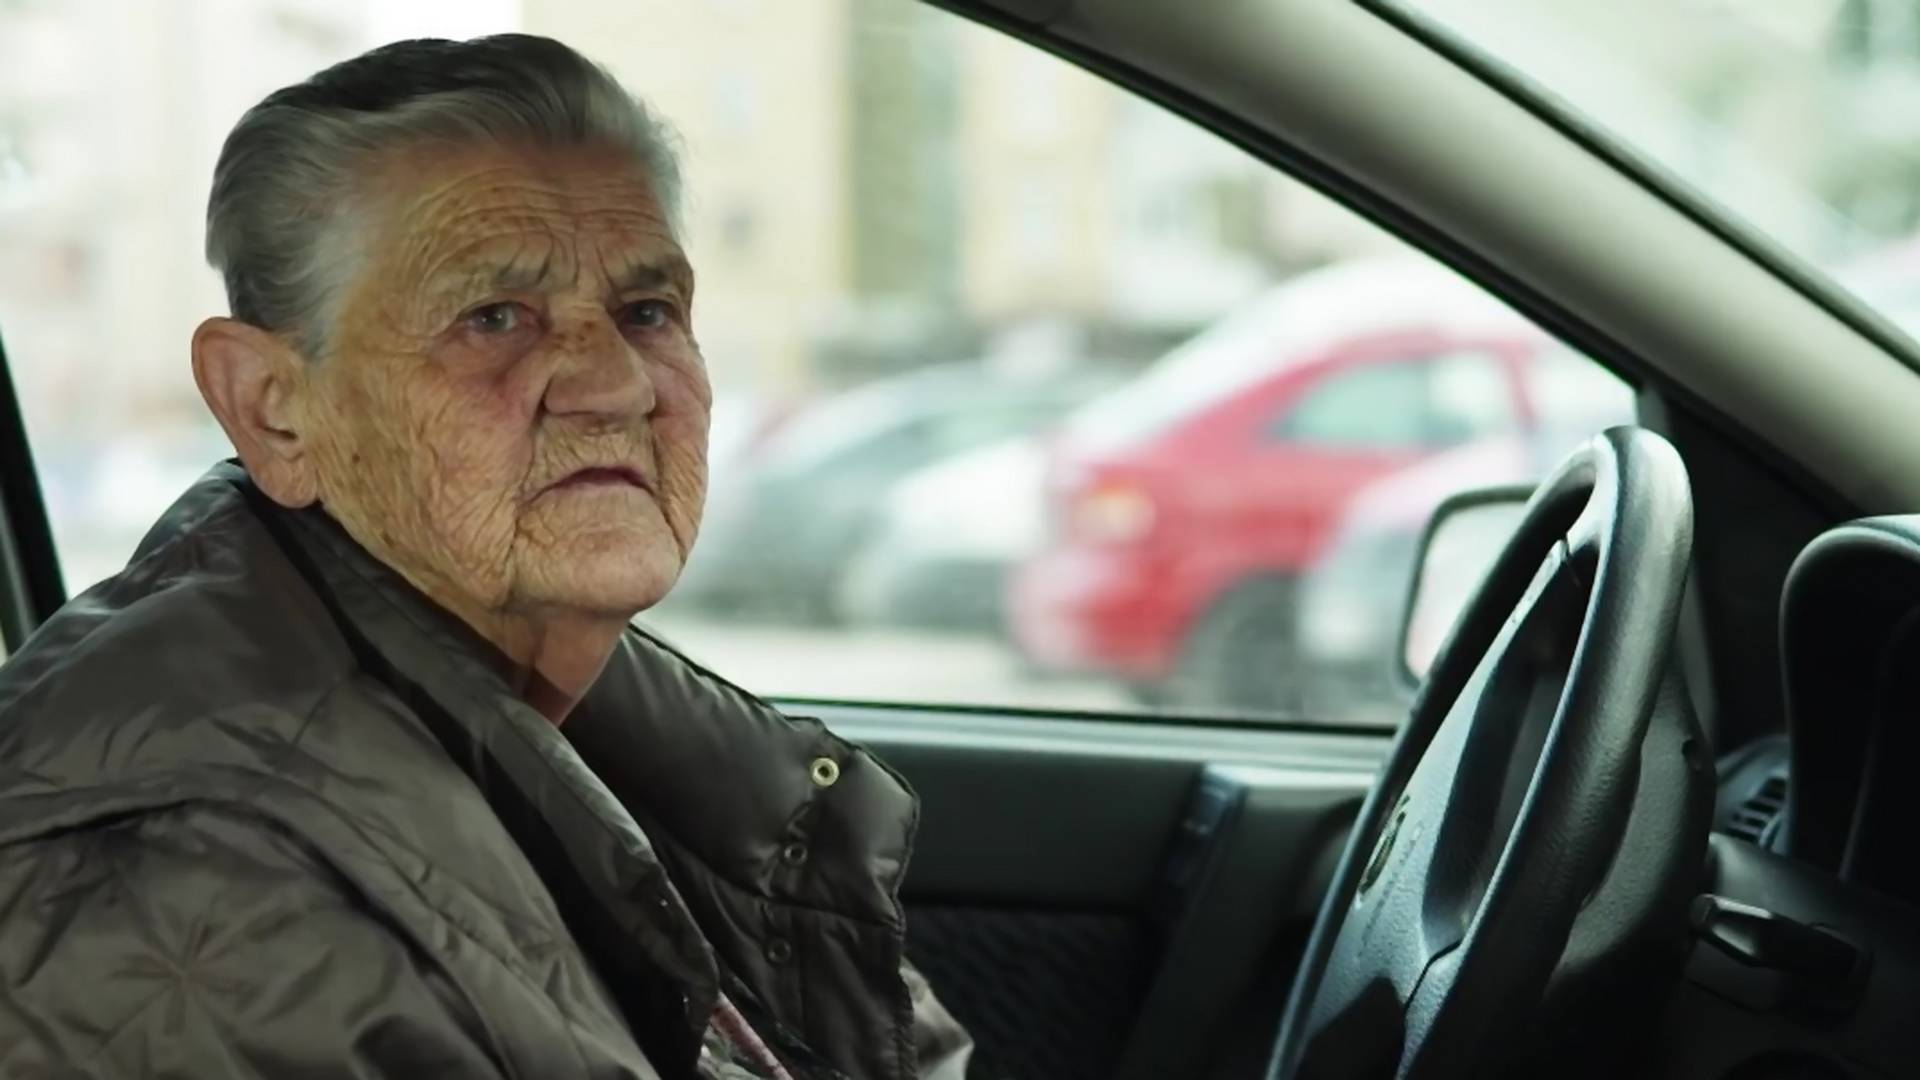 Reli baka iz Bosne ima 83 godine i ne planira da ostavi volan